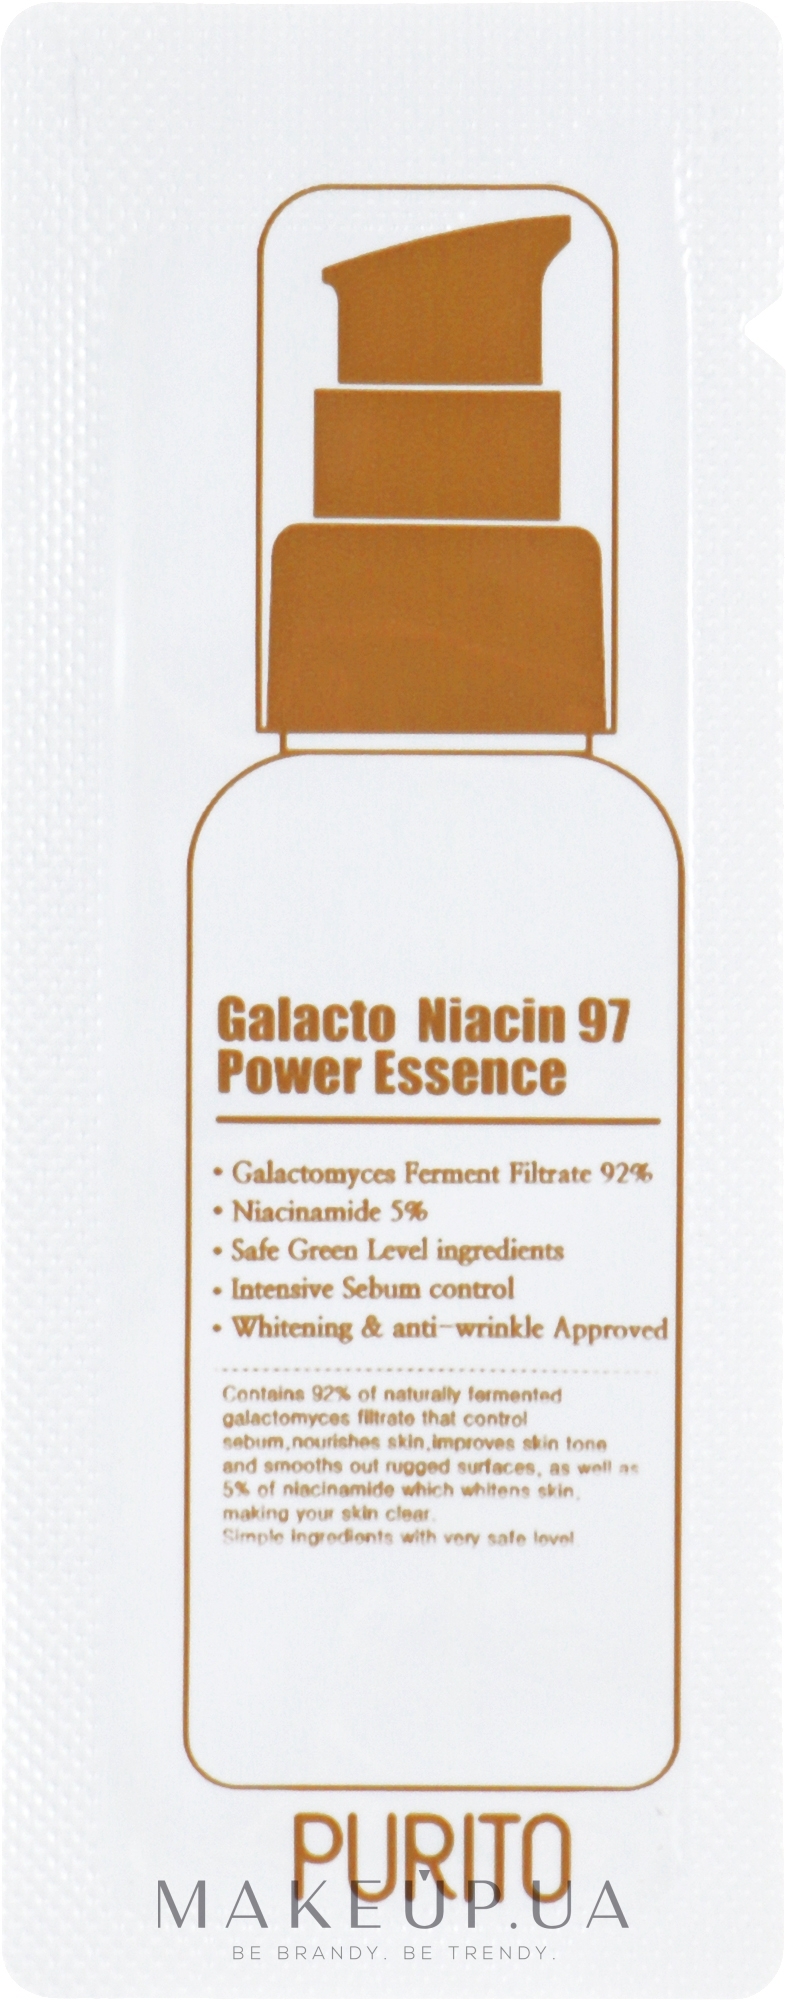 Восстанавливающая эссенция для лица с экстрактом галактомисиса - Purito Galacto Niacin 97 Power Essence (пробник) — фото 1ml